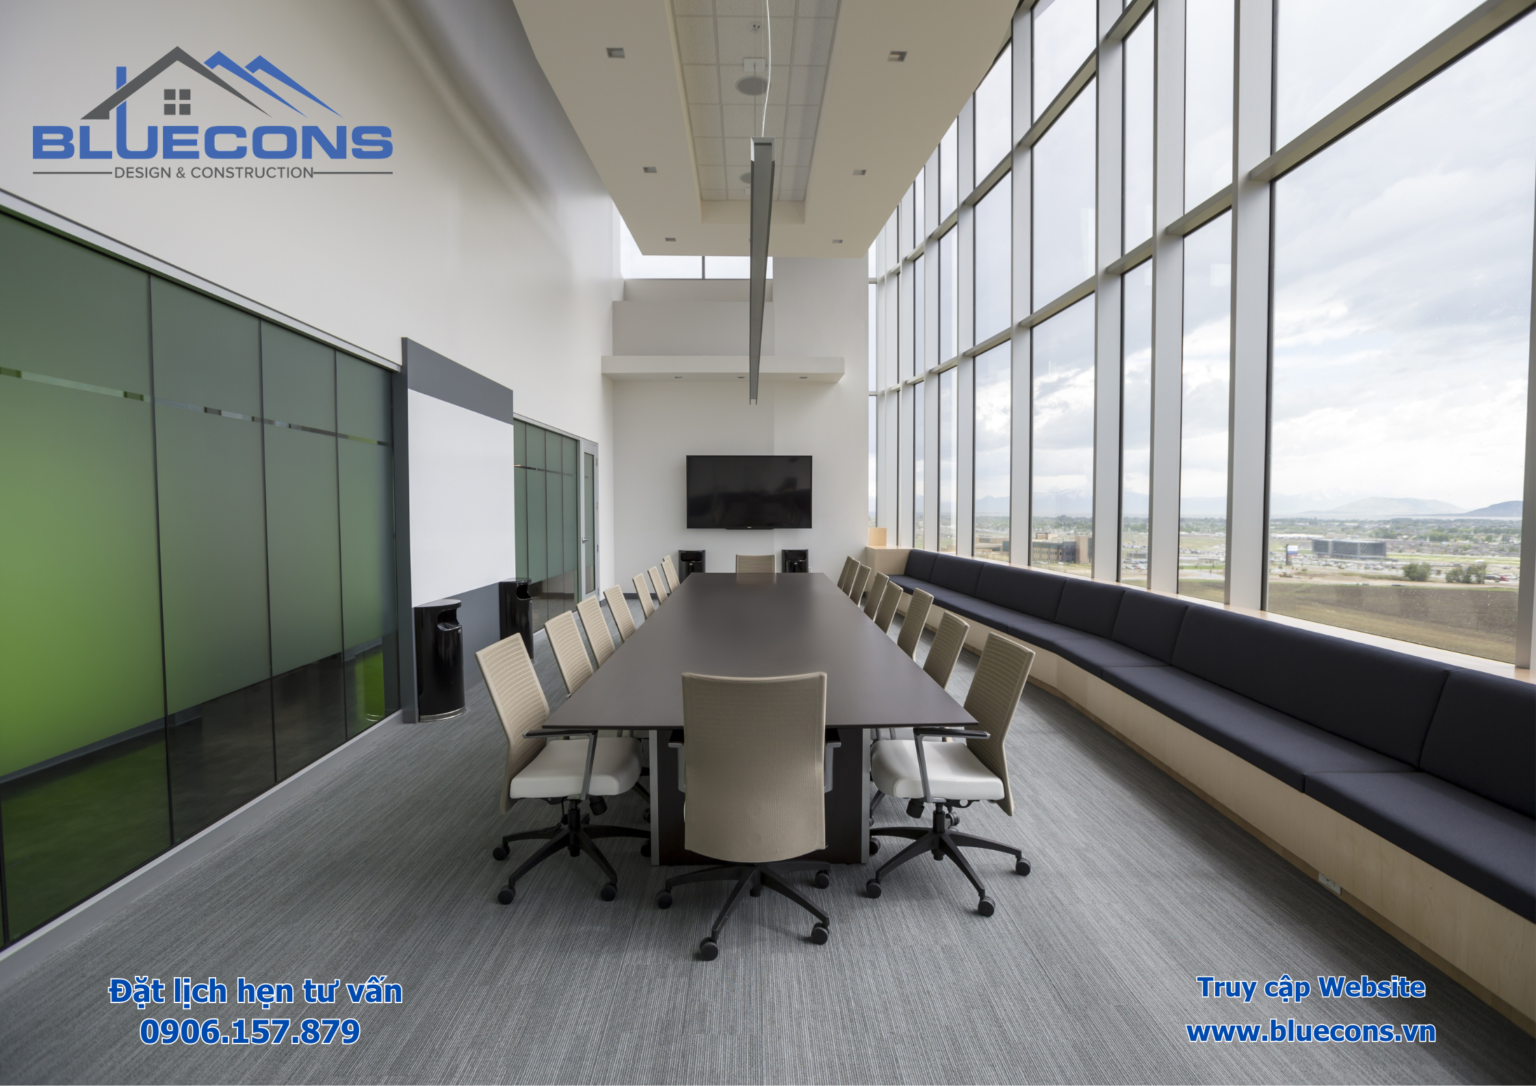 Tại sao Bluecons là lựa chọn hàng đầu dành cho bạn về thiết kế bàn họp văn phòng ? Lựa chọn một đơn vị thiết kế bàn họp văn phòng uy tín và đáng tin cậy là quan trọng để đảm bảo rằng bạn sẽ có một sản phẩm chất lượng và phù hợp với nhu cầu của bạn. Tại Bluecons, chúng tôi luôn đồng hành cùng khách hàng "Uy tín - Tận tâm - Chất lượng" Bluecons là đối tác tin cậy hàng đầu trong việc tạo ra không gian làm việc hiện đại và bền vững, thúc đẩy sự sáng tạo và hiệu suất của các tổ chức Bluecons có đội ngũ chuyên gia thiết kế và kỹ sư có kinh nghiệm lâu năm trong việc thiết kế và sản xuất nội thất văn phòng. Tại đây chúng tôi cung cấp nhiều kiểu dáng khác nhau cho bàn họp, từ các thiết kế hiện đại đến các kiểu dáng truyền thống. Điều này giúp bạn tìm ra lựa chọn phù hợp với phong cách và thẩm mỹ của bạn. Bluecons sử dụng các nguồn tài nguyên và vật liệu cao cấp để sản xuất bàn họp. Điều này đảm bảo rằng sản phẩm của bạn không chỉ đẹp mắt mà còn bền bỉ. Bluecons cung cấp các sản phẩm và dịch vụ có giá trị tốt, giúp bạn có được sản phẩm chất lượng mà không phải bỏ ra một khoản tiền lớn. Liên hệ với chúng tôi hôm nay để biết thêm thông tin về sản phẩm bàn họp và bắt đầu trang trí không gian sống của bạn một cách sáng tạo và độc đáo! Địa chỉ: 1264/11 Lê Đức Thọ, phường 13, quận Gò vấp Email: Blueconsvn@gmail.com Hotline: 090 615 7879 Fanpage: THIẾT KẾ VÀ THI CÔNG NỘI THẤT BLUECONS